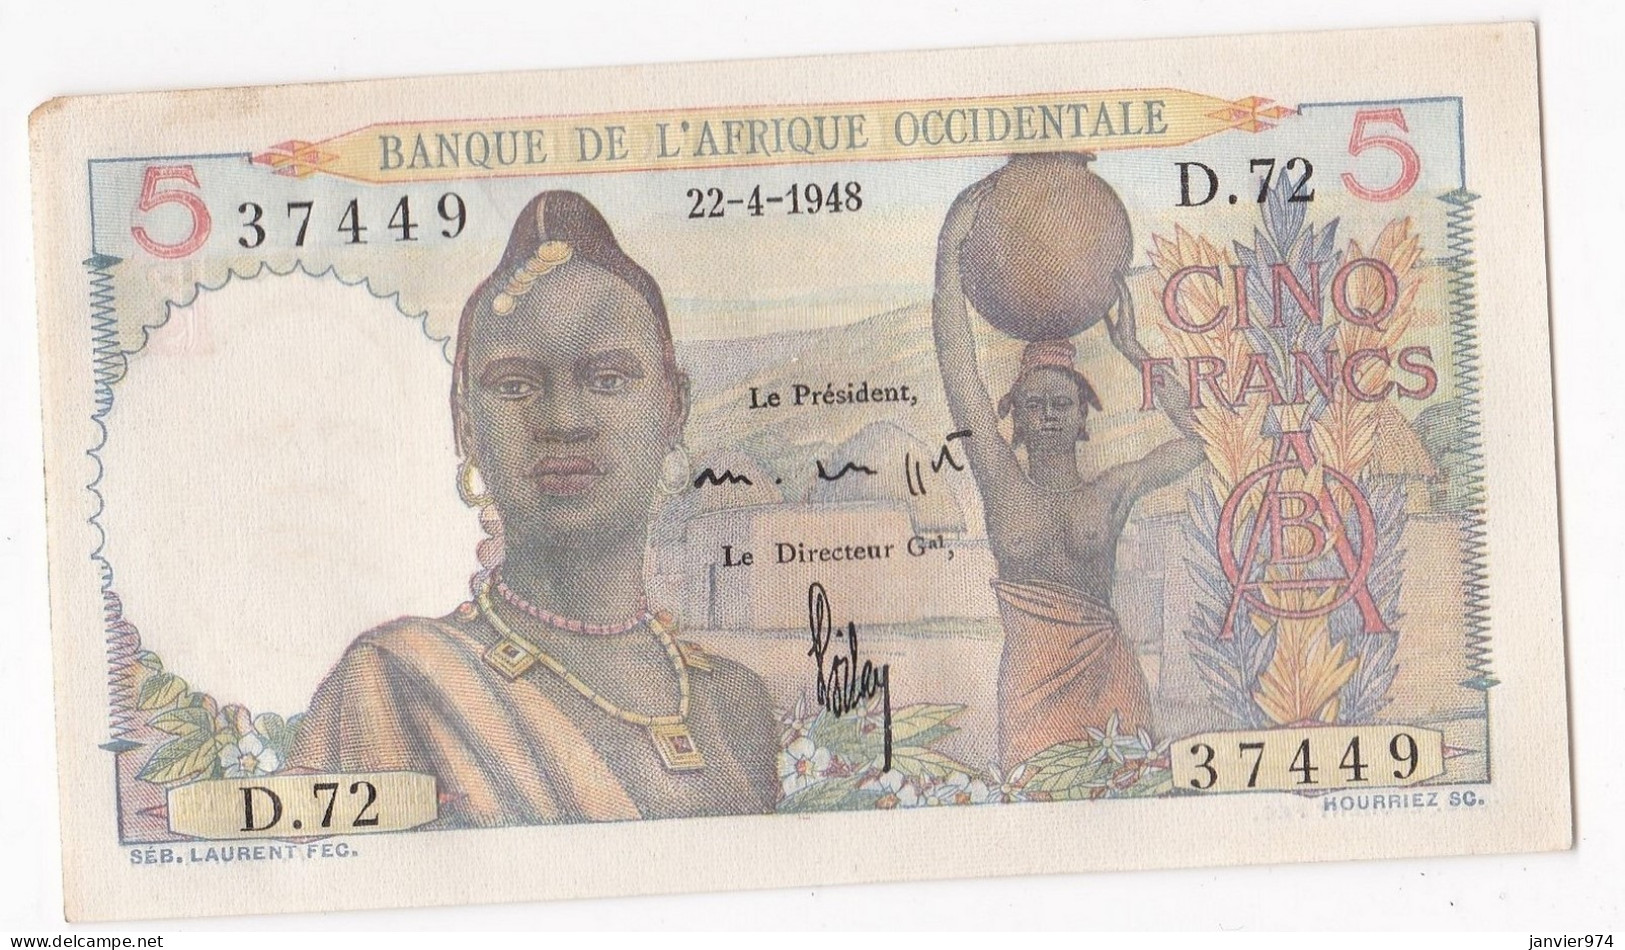 Banque De L'Afrique Occidentale 5 Francs 22 4 1948, Alph : D 72 N° 37449, Non Circuler, Avec Son Craquant D’origine - Andere - Afrika